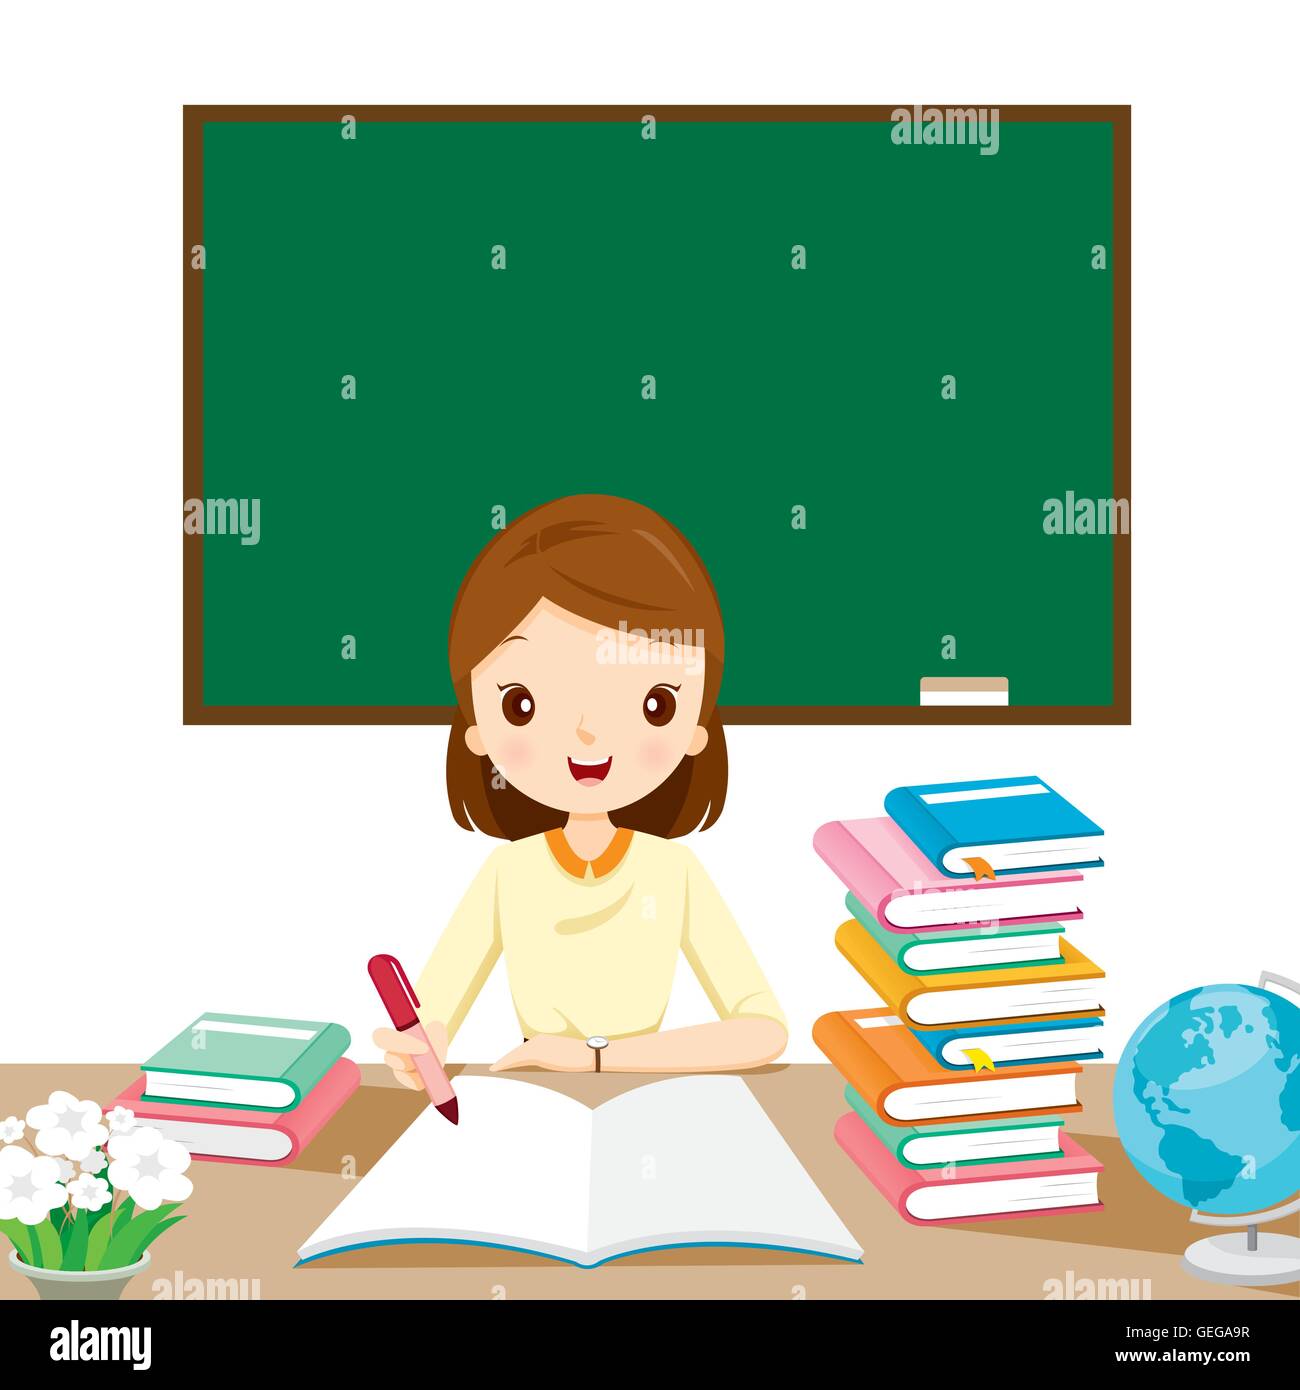 Frau Lehrer überprüft Hausaufgaben auf Tisch, Beruf, Beruf, zurück zur Schule, Buch, Kinder, Schule-Versorgungsmaterialien Stock Vektor